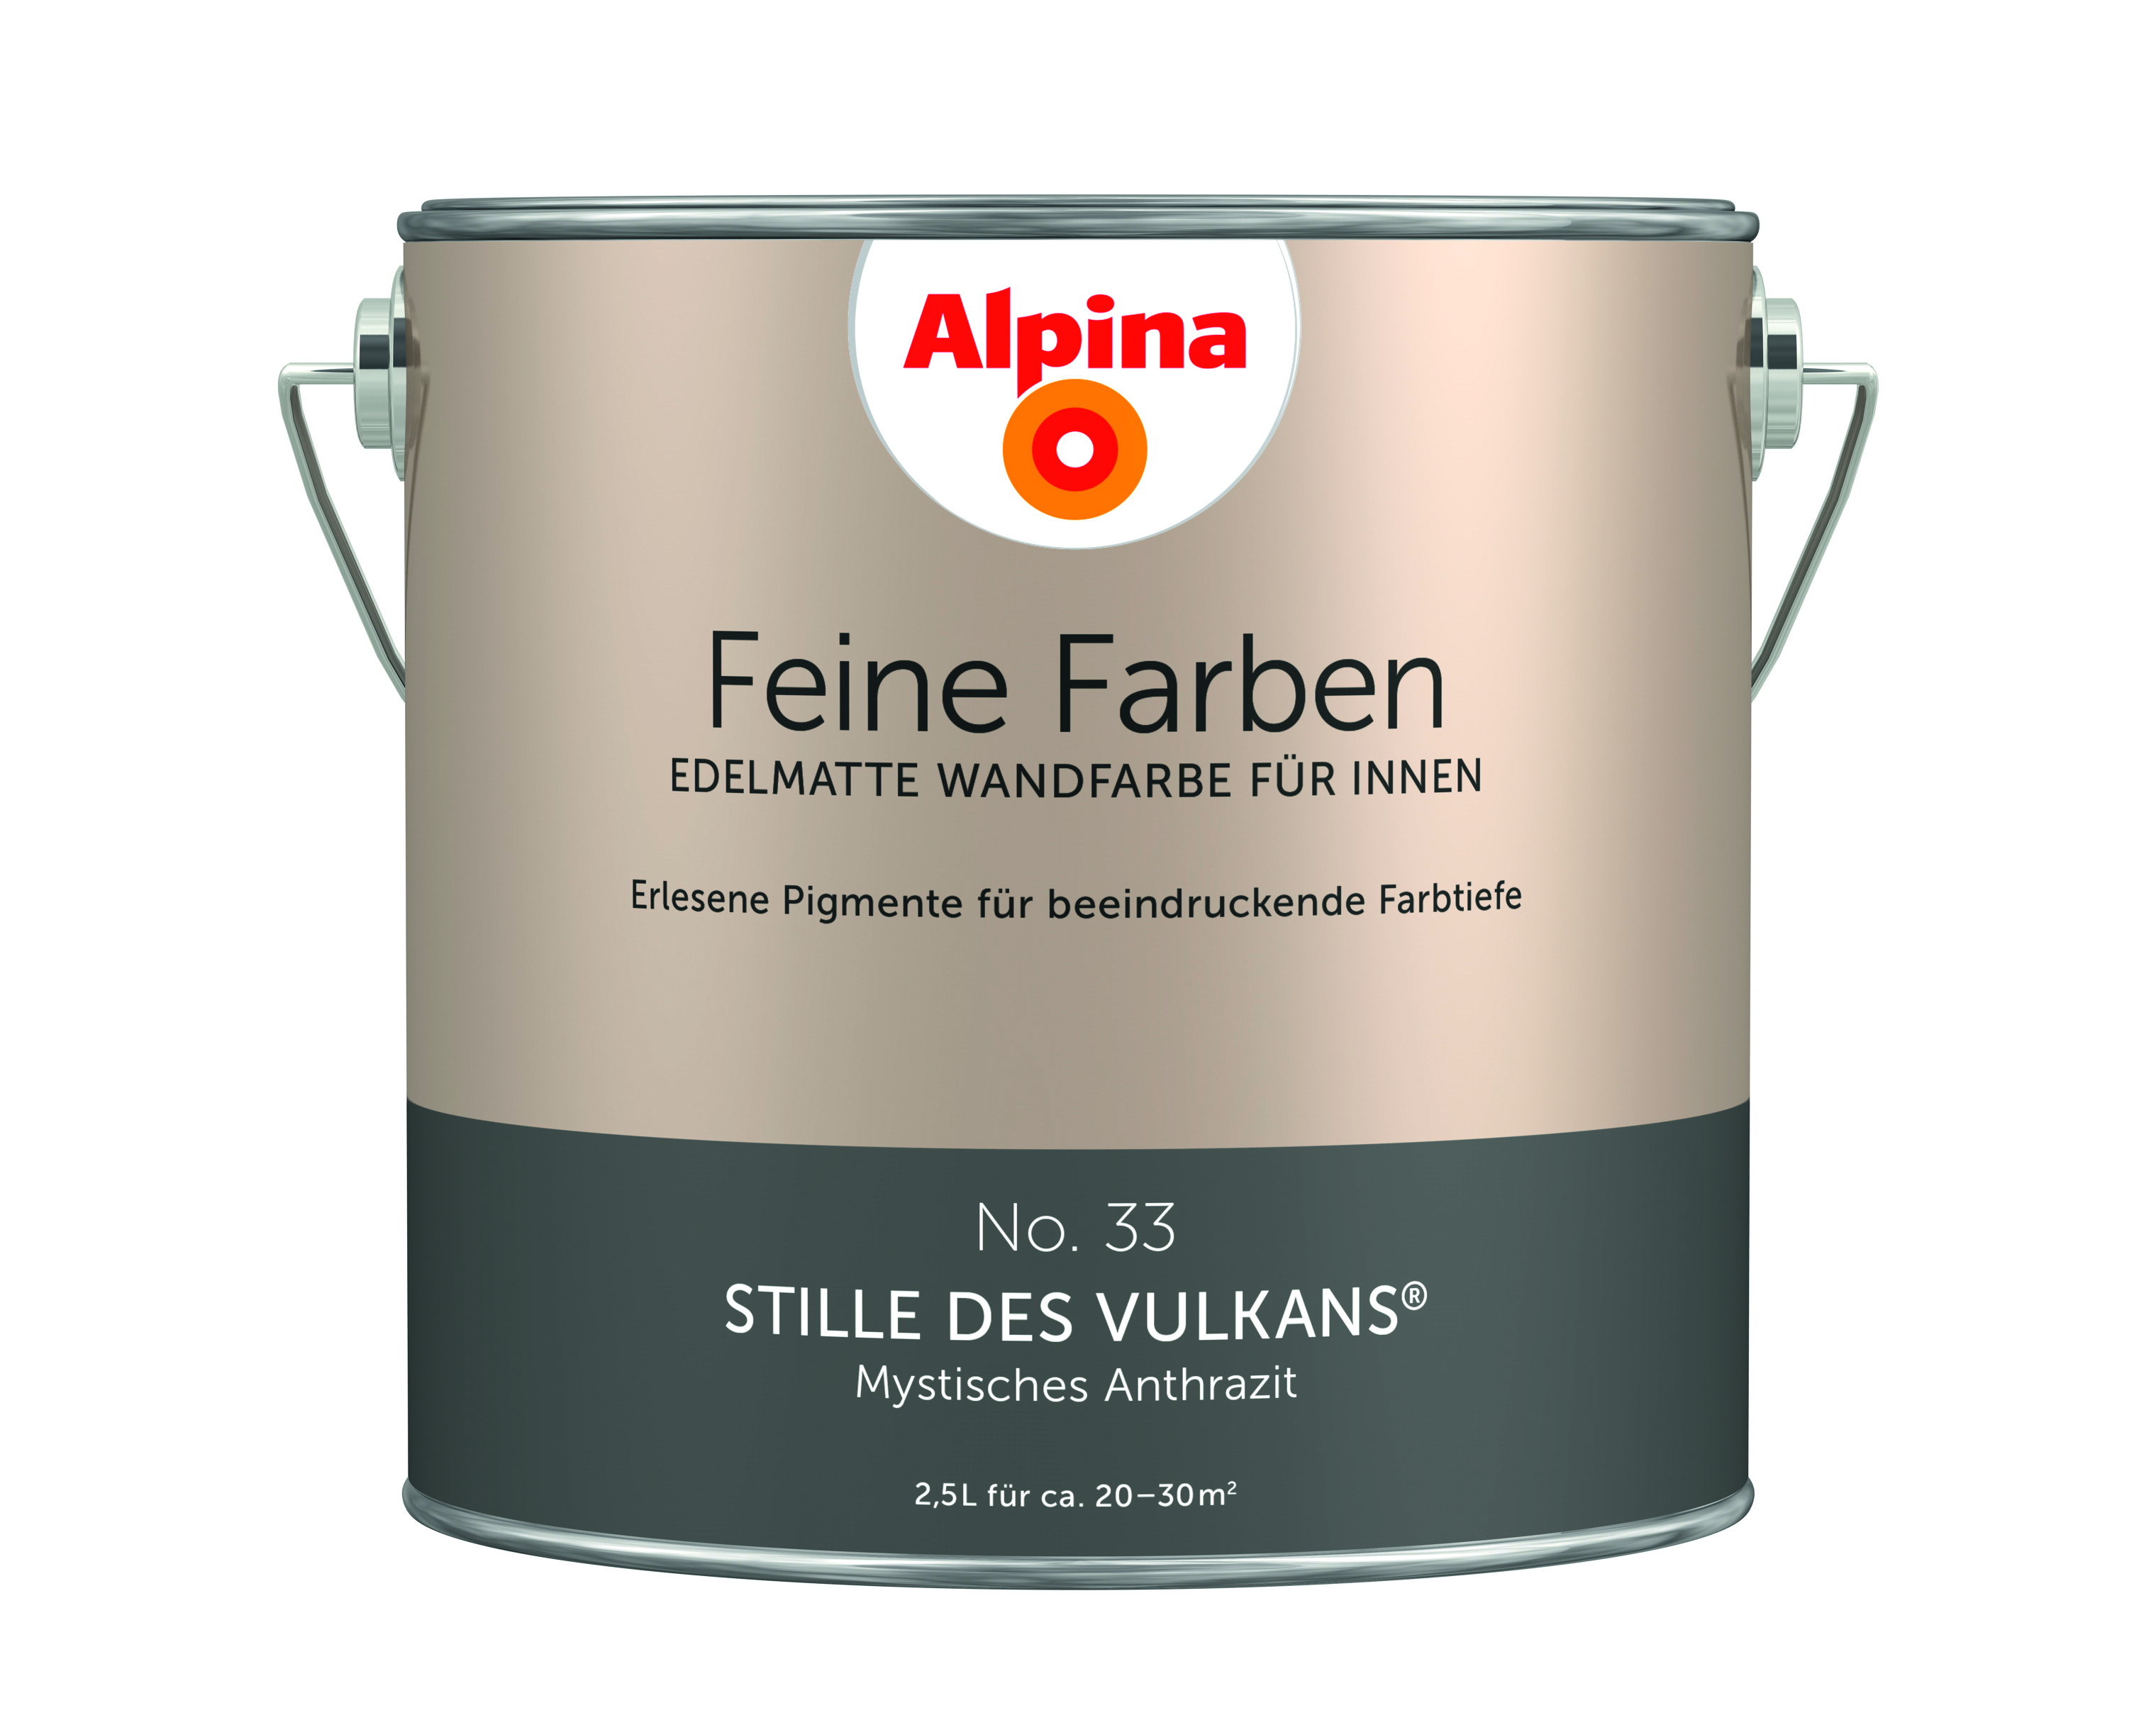 Alpina Feine Farben No. 33 - Stille des Vulkans, Anthrazit 2,5 Liter